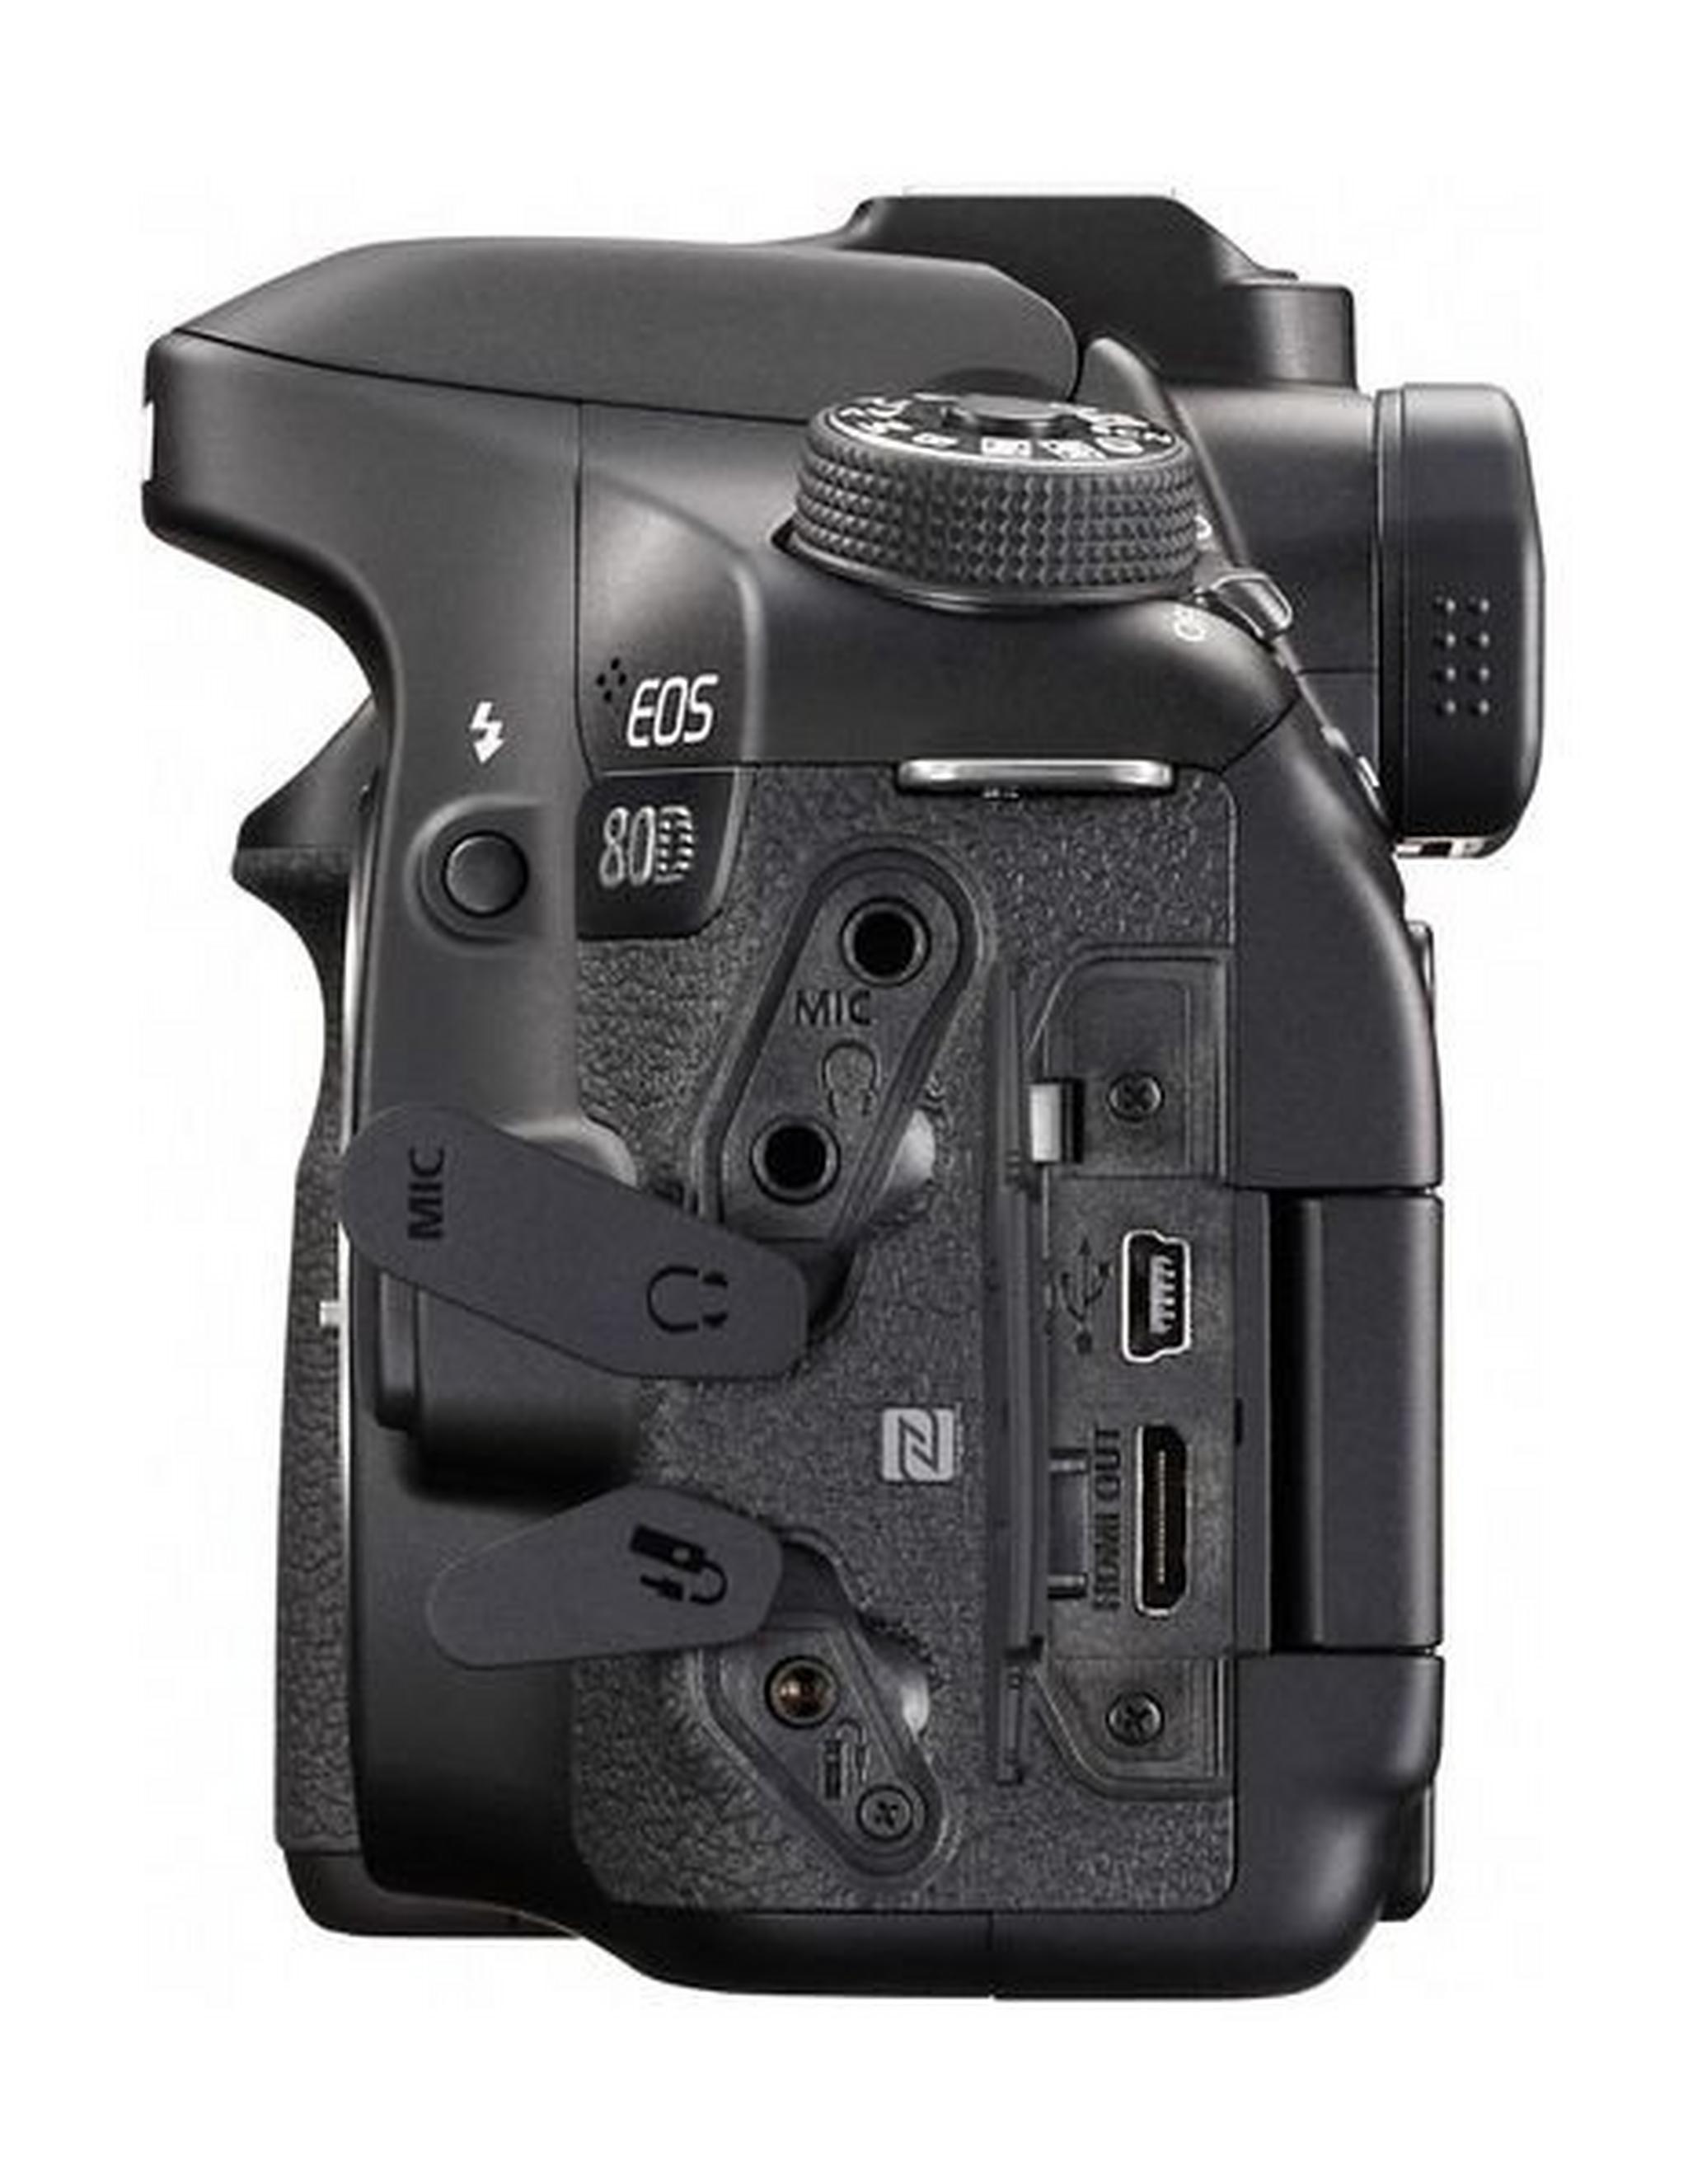 كاميرا كانون الرقمية إس إل آر بدقة ٢٤.٢ ميجا بكسل مع عدسة ١٨-١٣٥ ملم - واي فاي - أسود (EOS-80D)